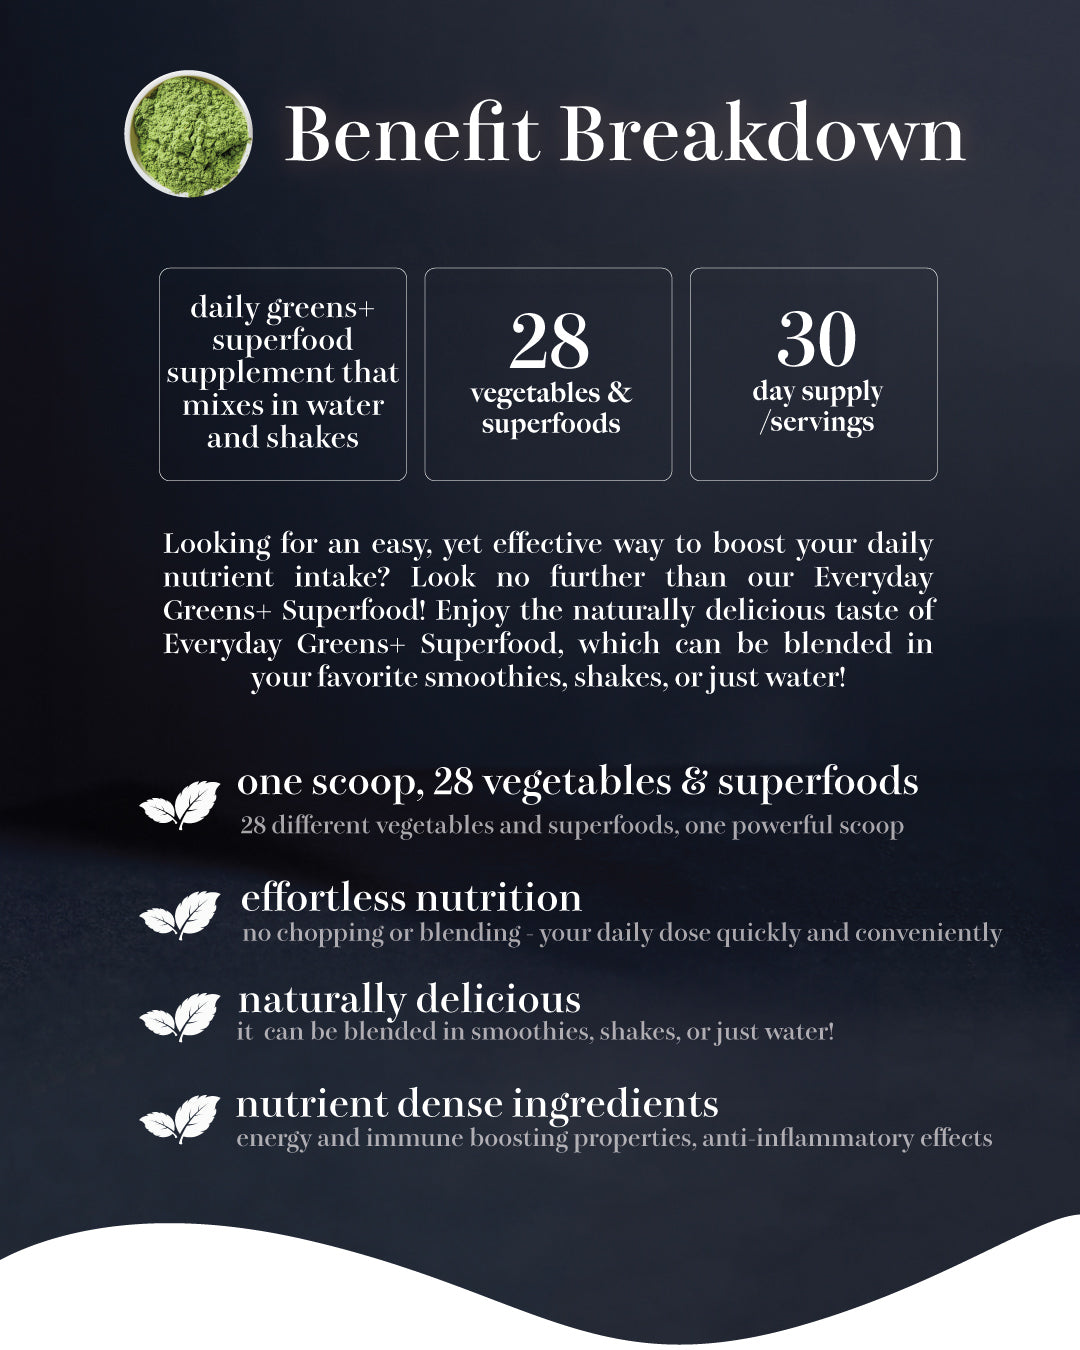 Greens+ Superfood Benefit Breakdown